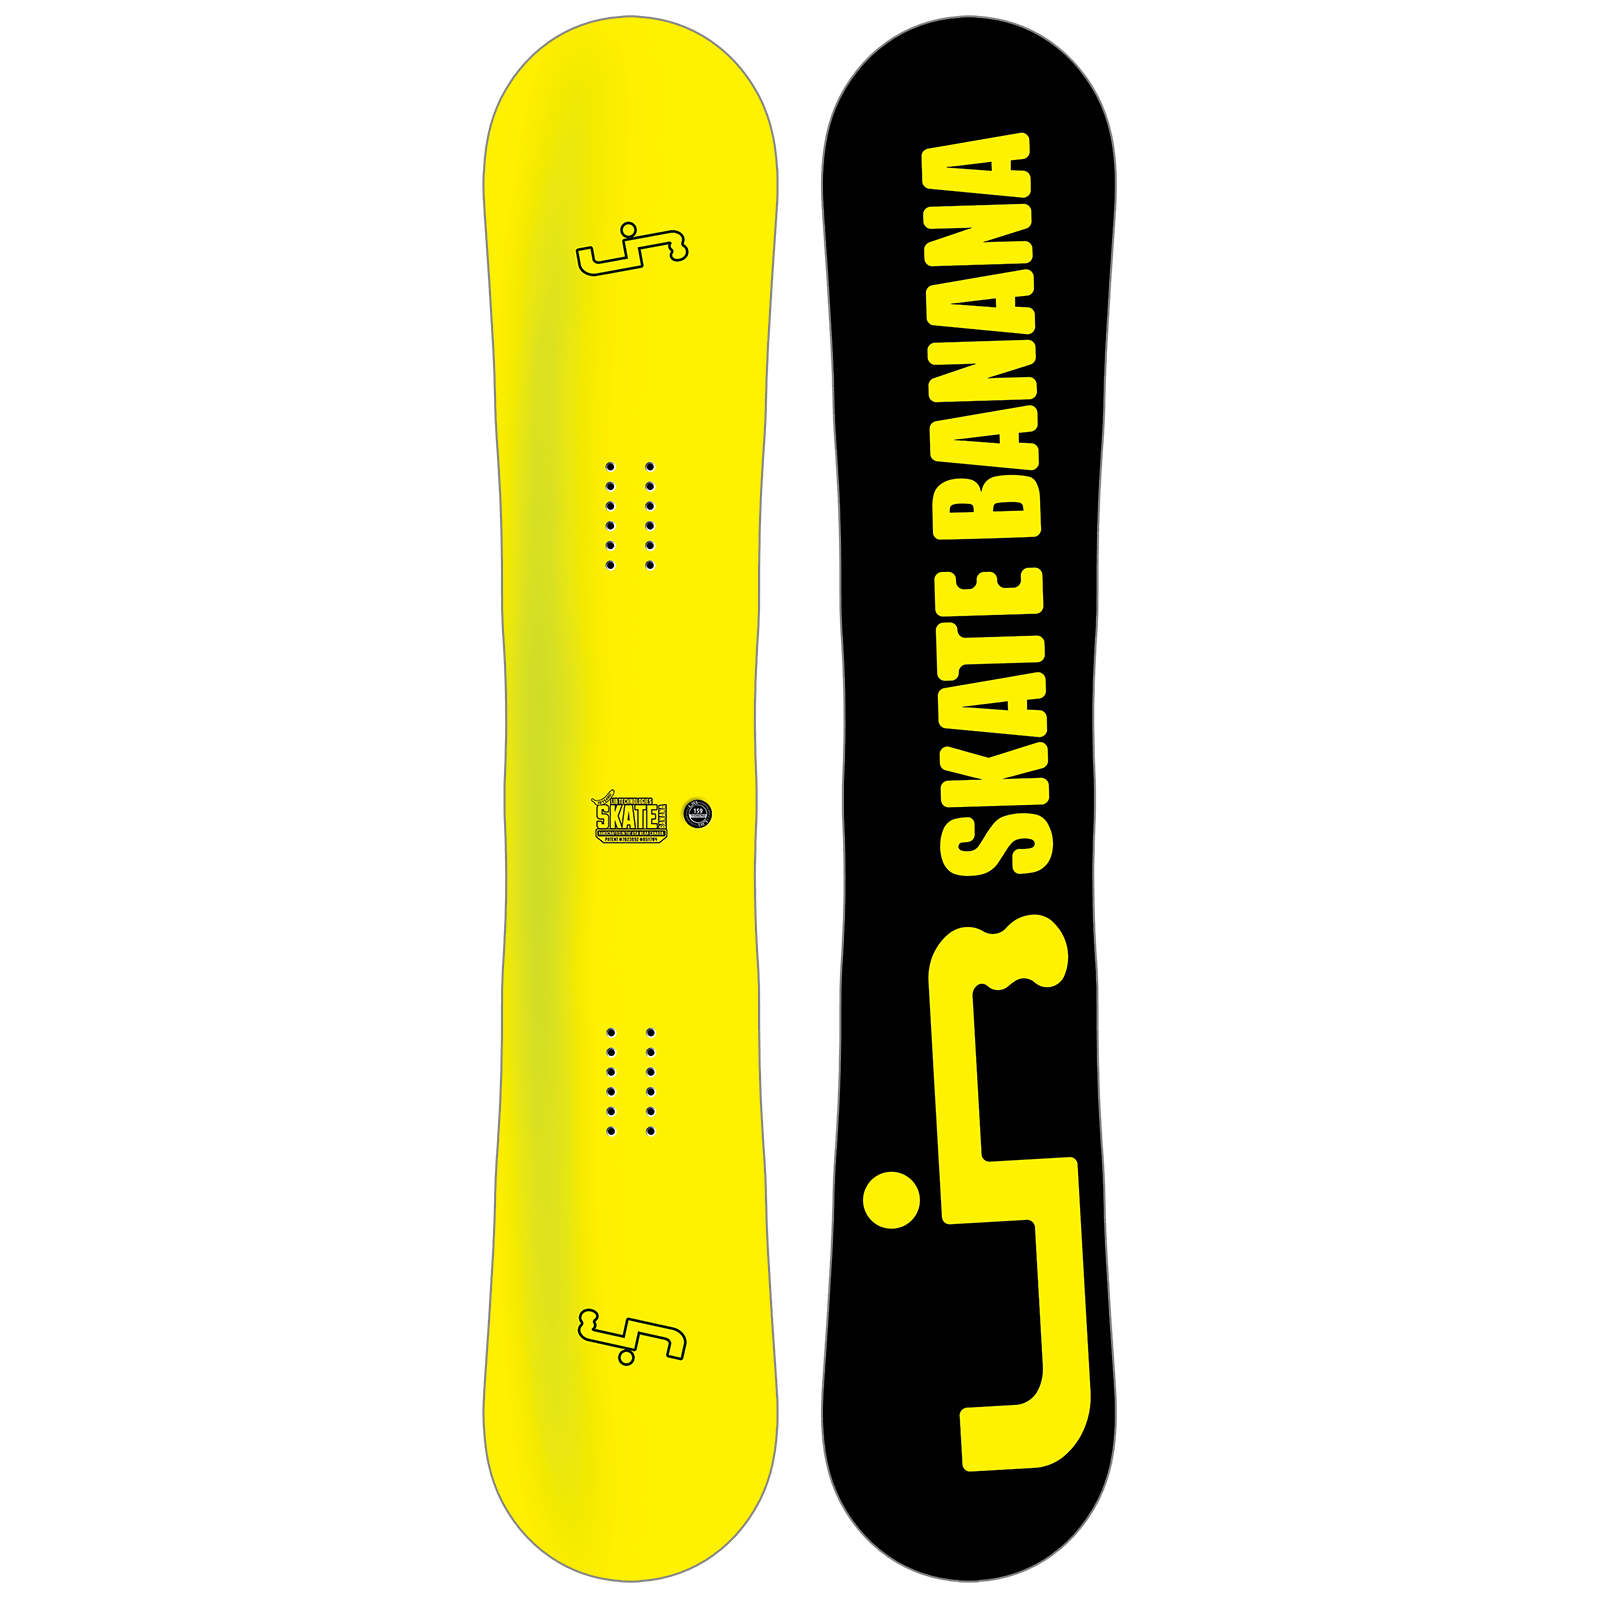 Pack Skate Banana